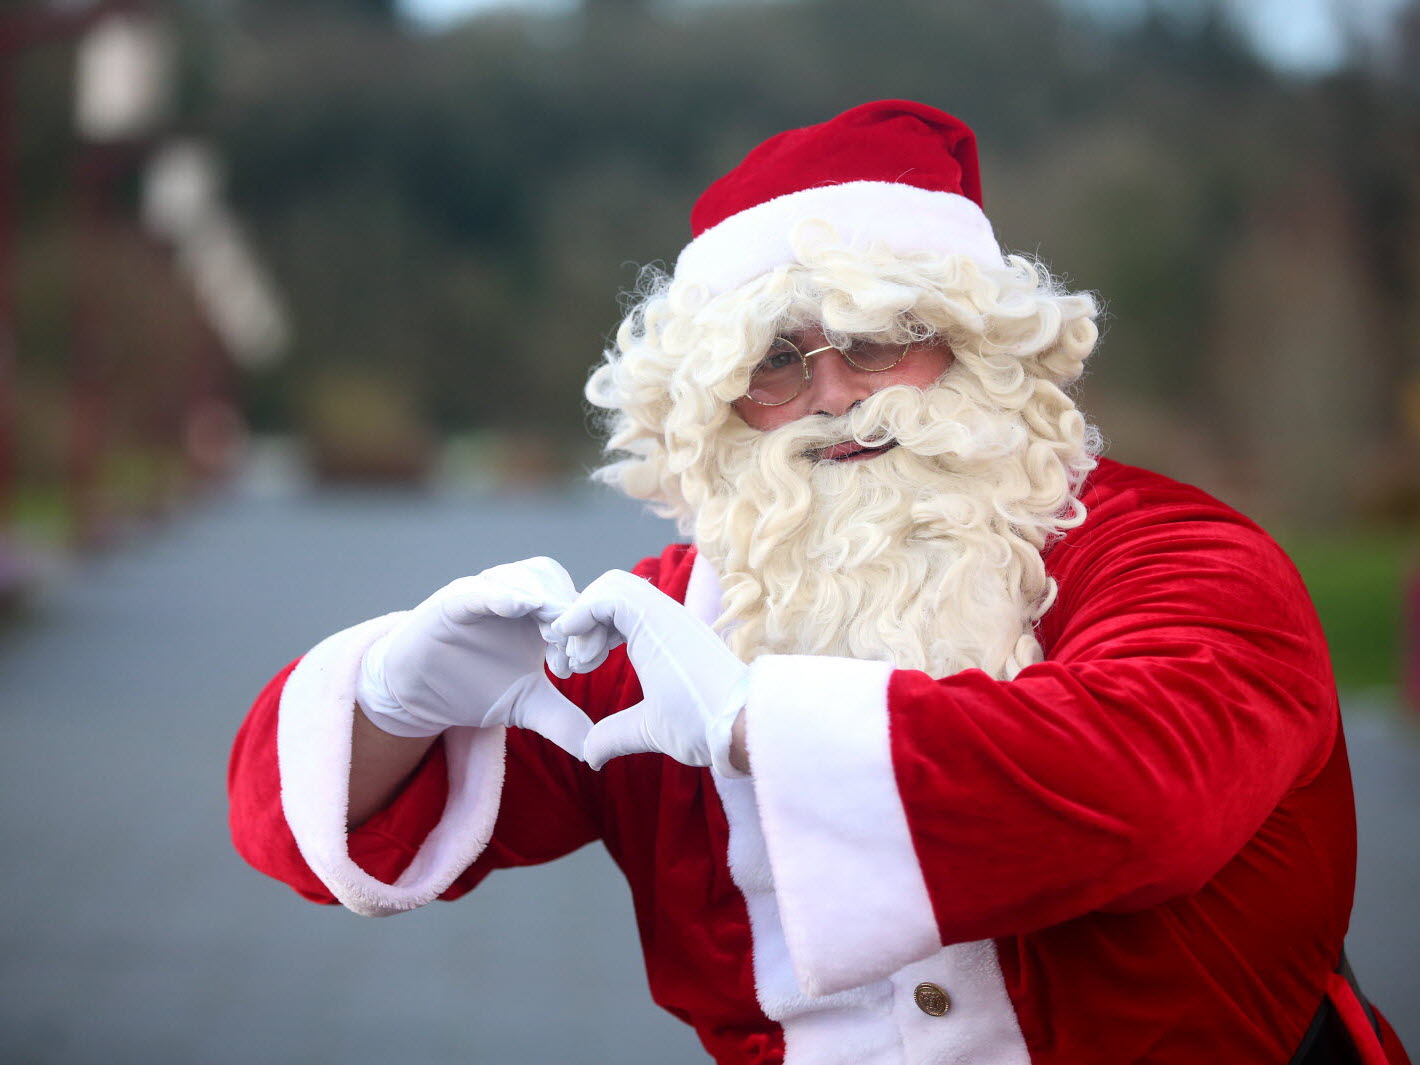 Le père Noël propagera la magie des Fêtes dans les rues de Sainte-Julie le 24 décembre!